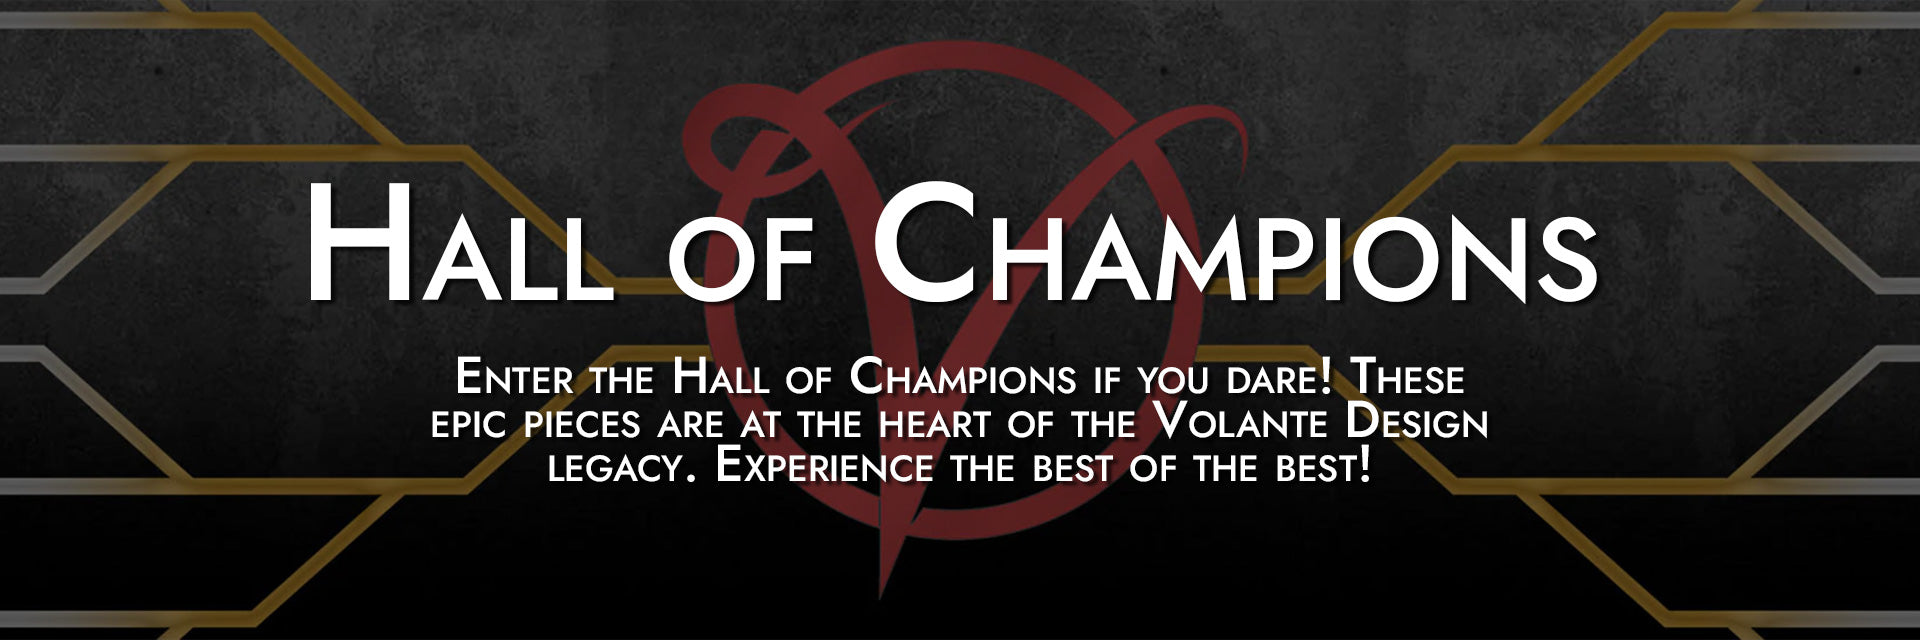 Hall of Champions